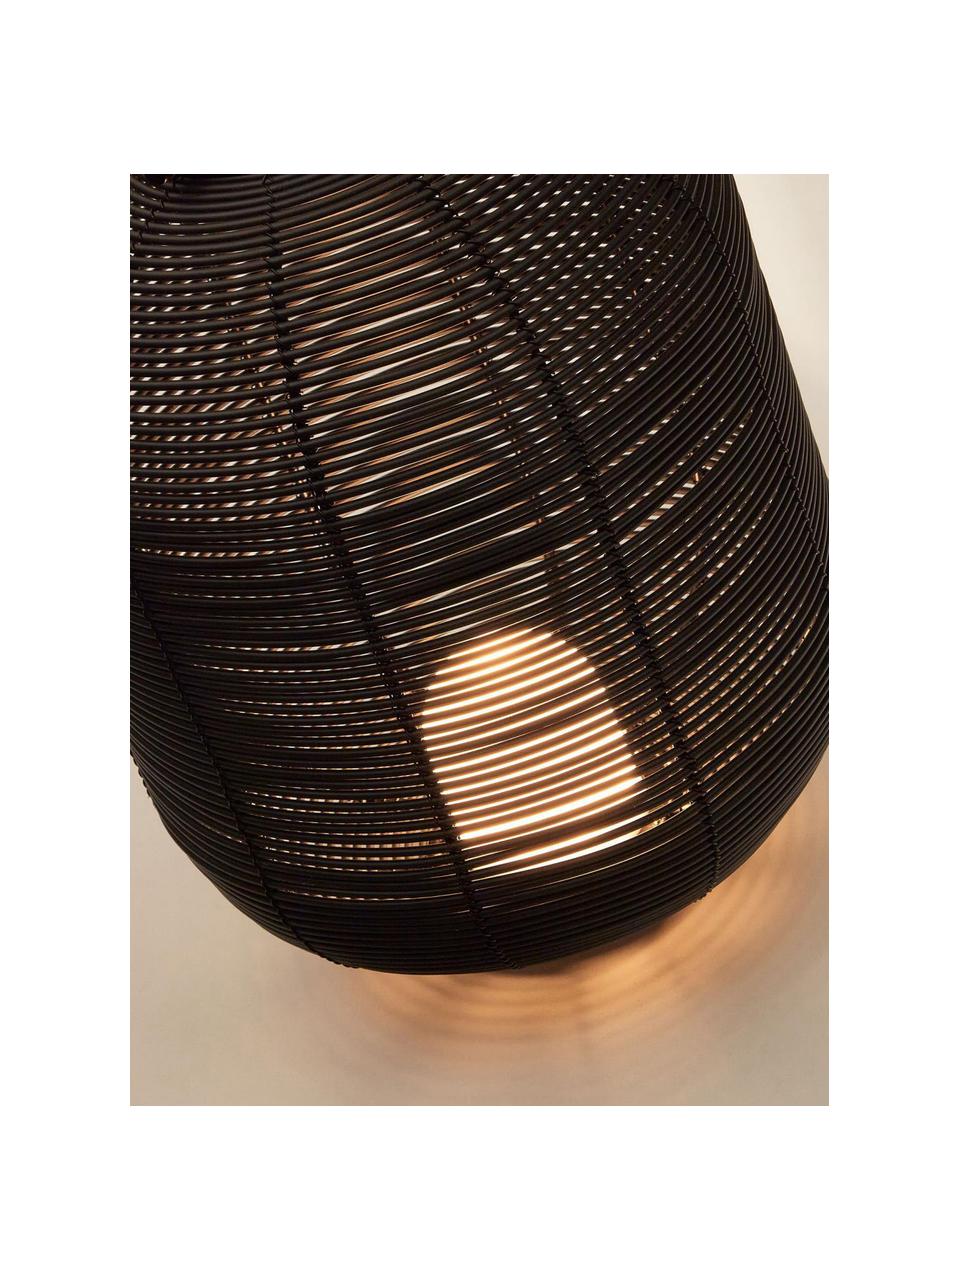 Mobiele LED outdoor tafellamp Saranella, H 37 cm, Kunststof, gecoat metaal, Zwart, Ø 24 x H 37 cm